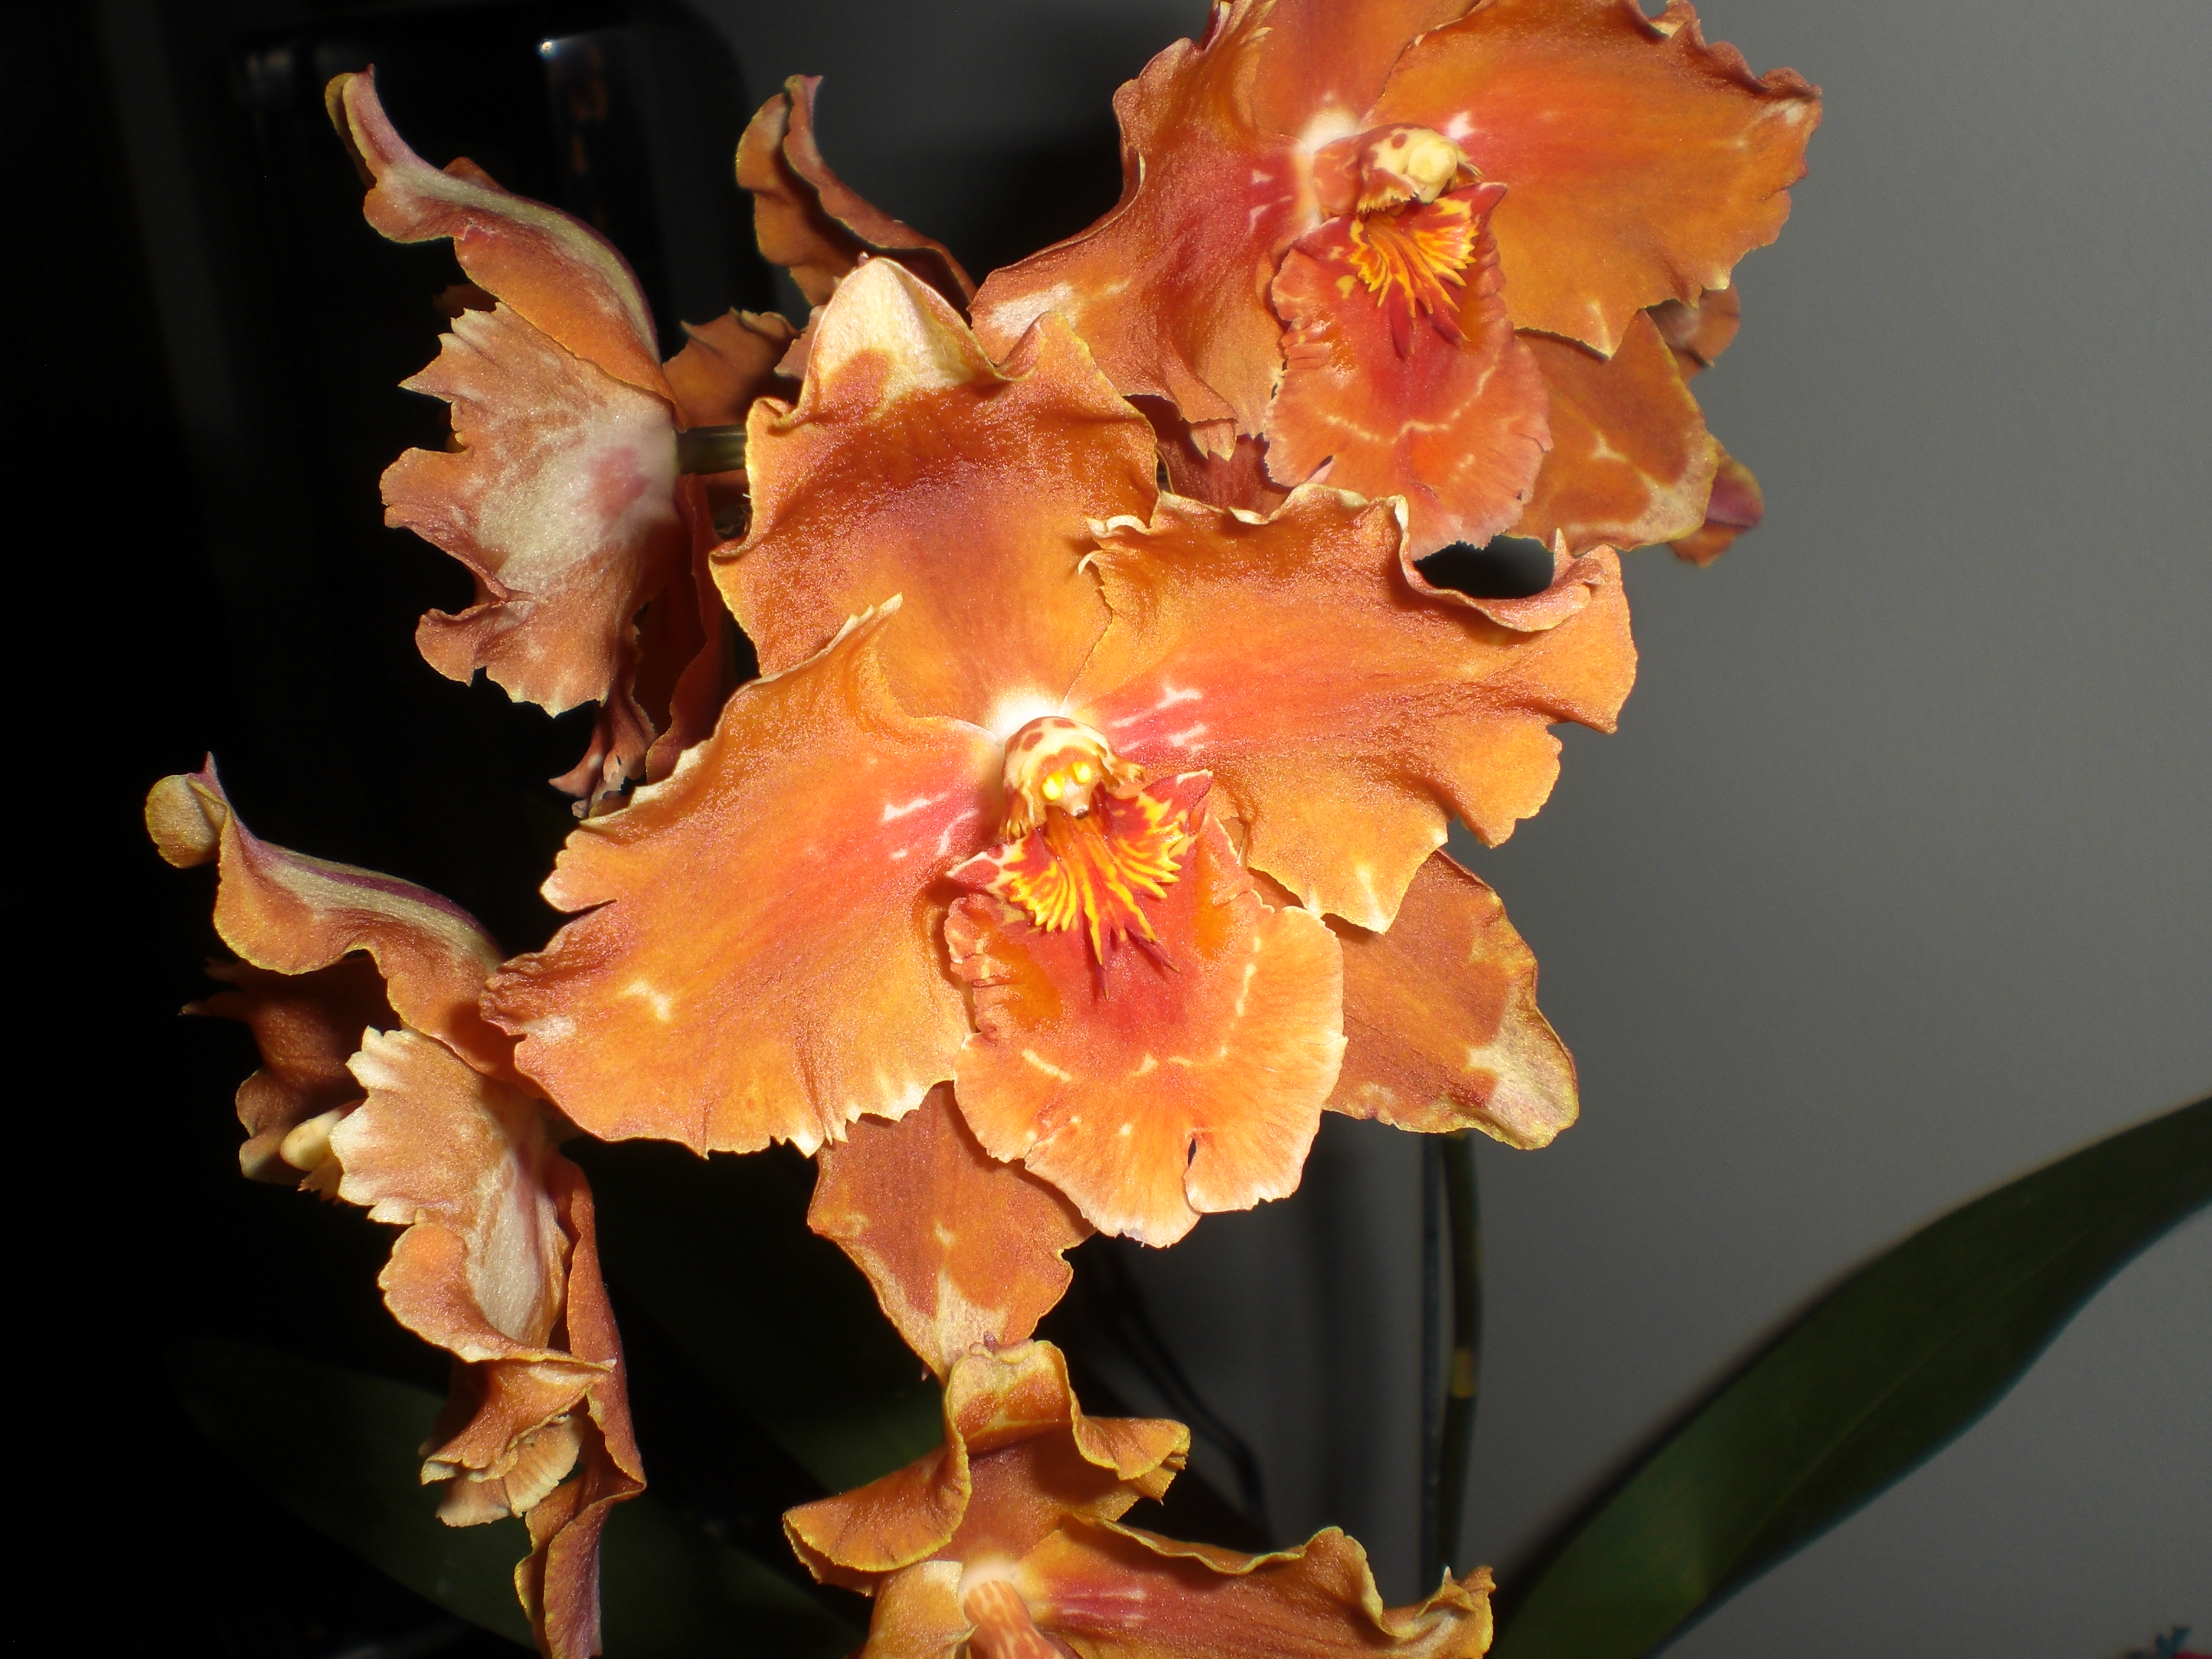 <p><b><p>Flores de orquídeas sadias.</p></b></p><p>Autor: M.A.V.Alexandre</p>